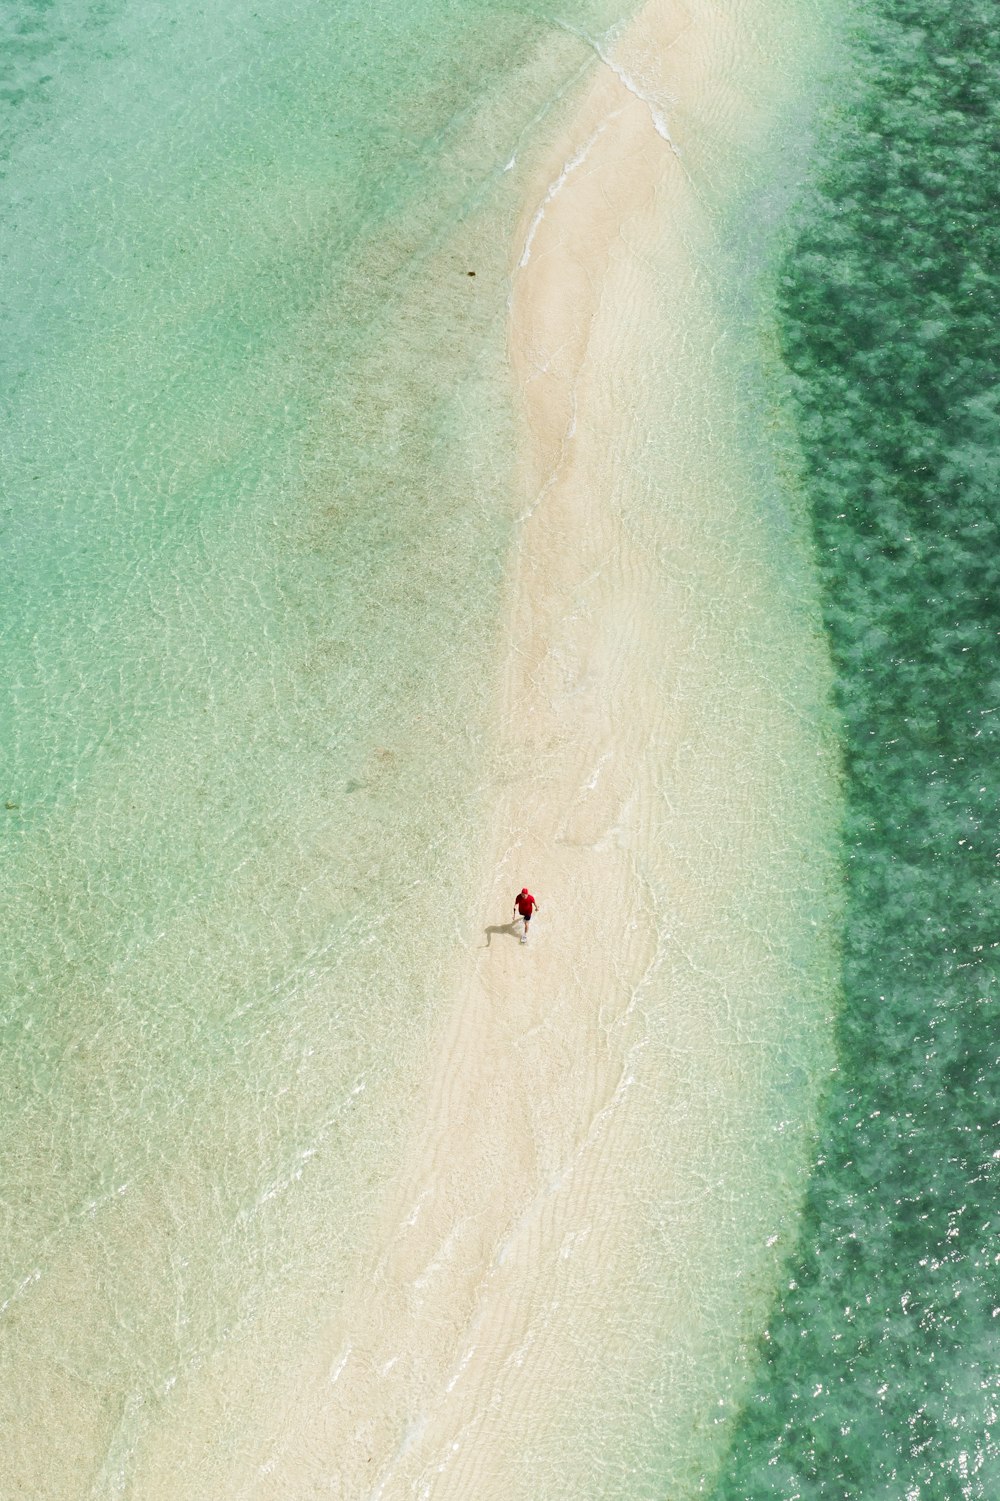 vue aérienne d’une personne surfant sur la mer pendant la journée